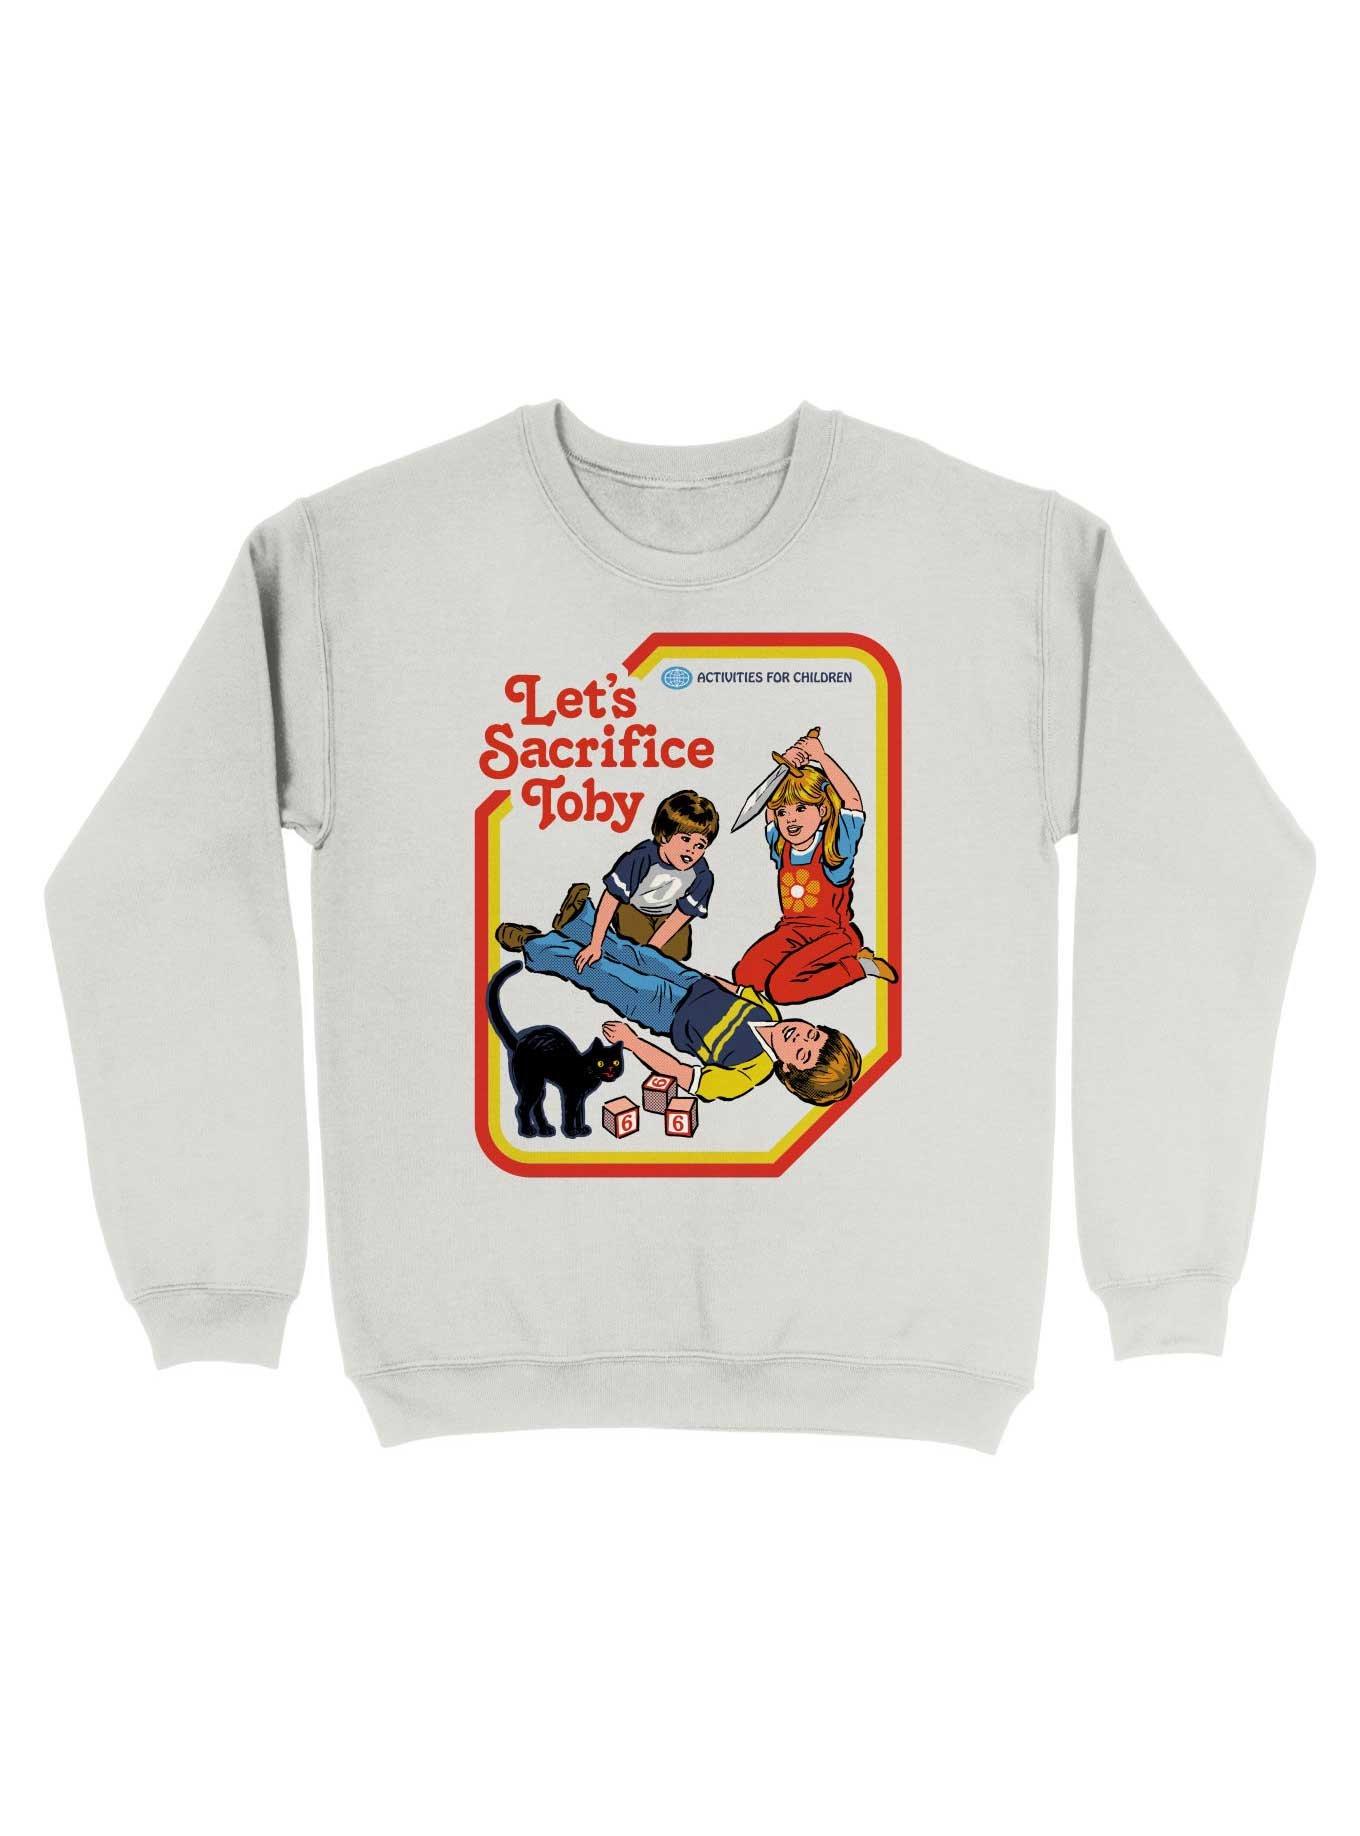 Let's Sacrifice Toby Sweatshirt By Steven Rhodes, WHITE, hi-res